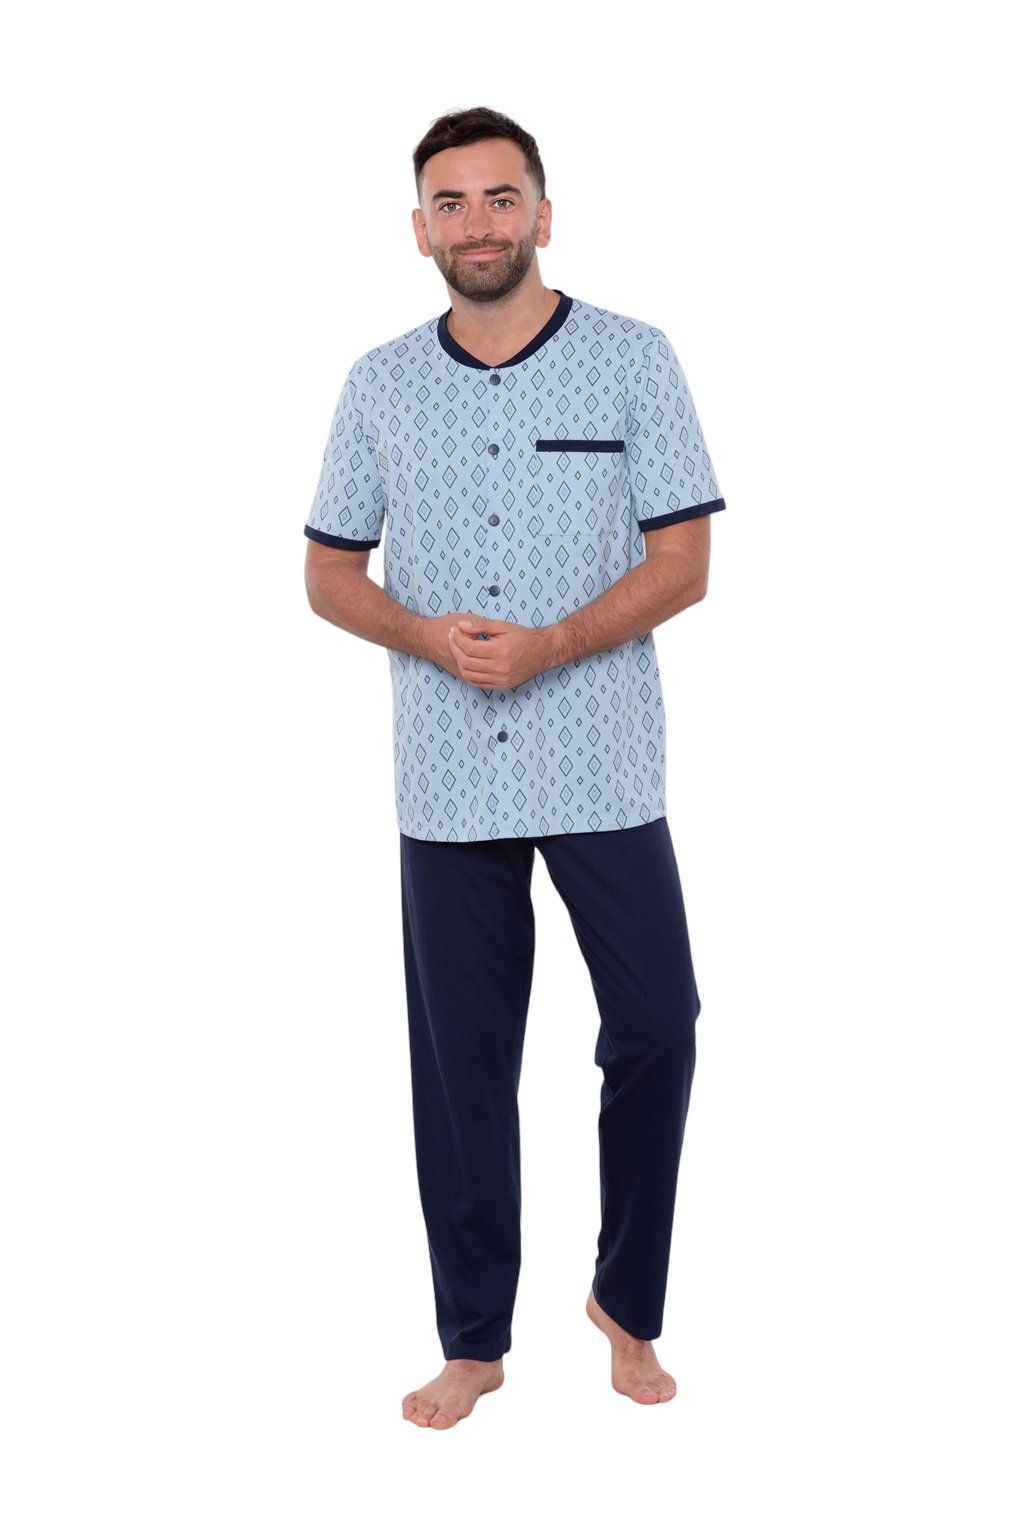 Pánské pyžamo s krátkým rukávem a dlouhými nohavicemi, 204122 477, modrá - Velikost M Wadima